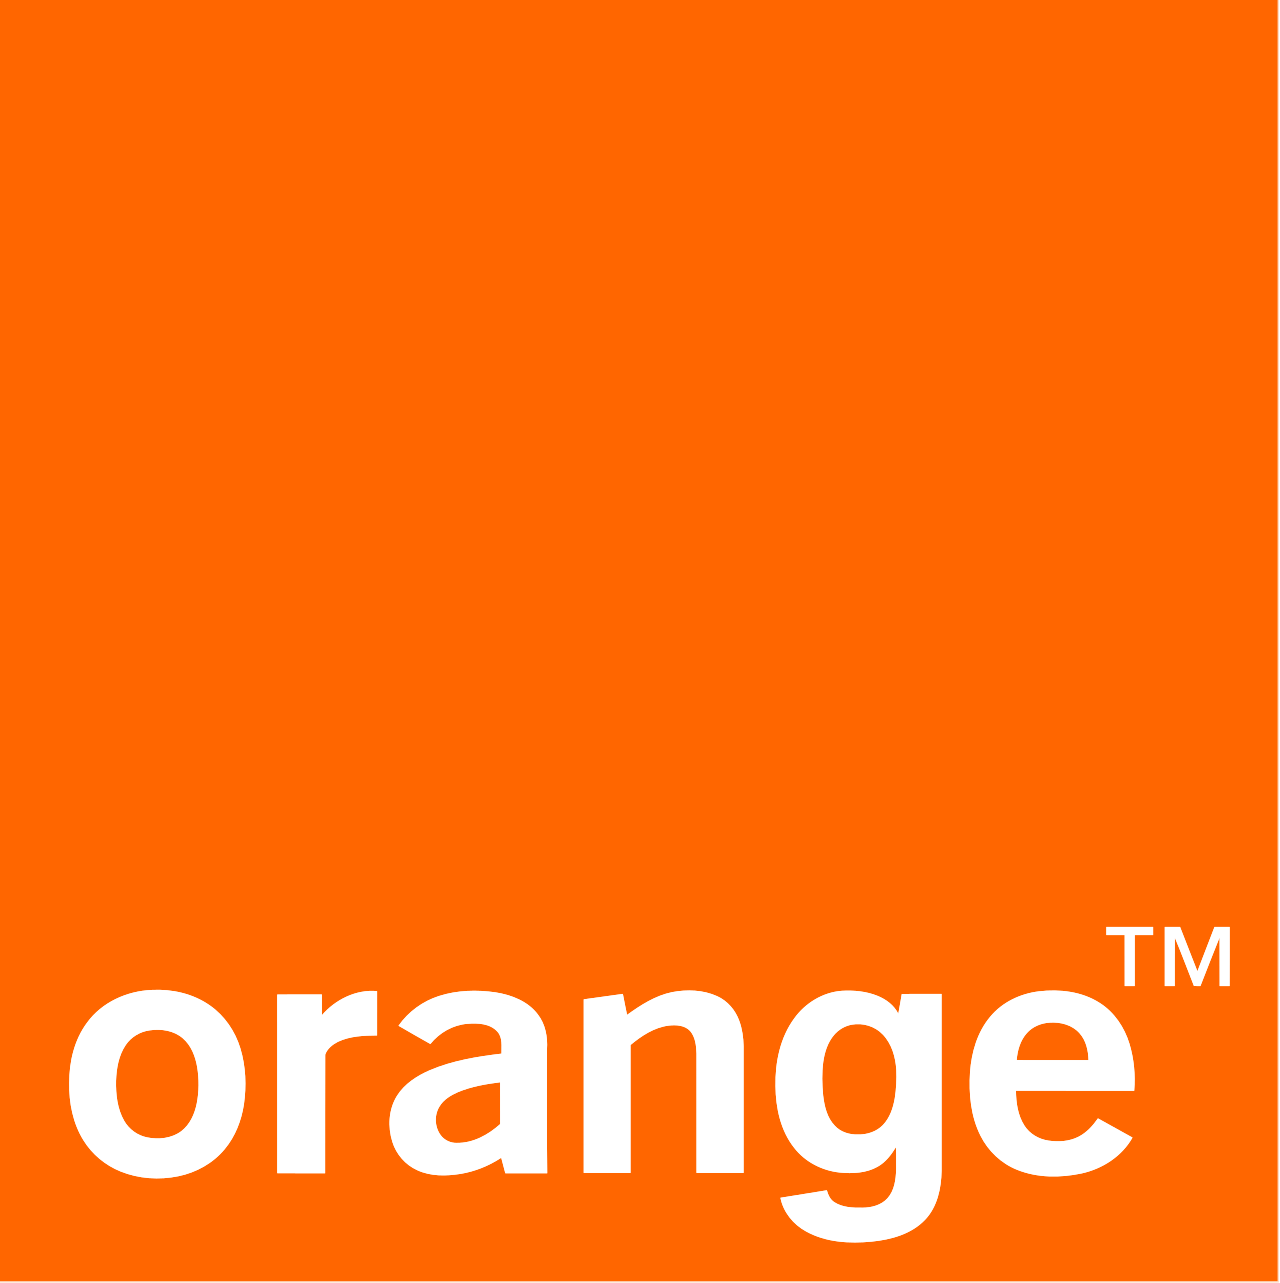 Orange France Télécom